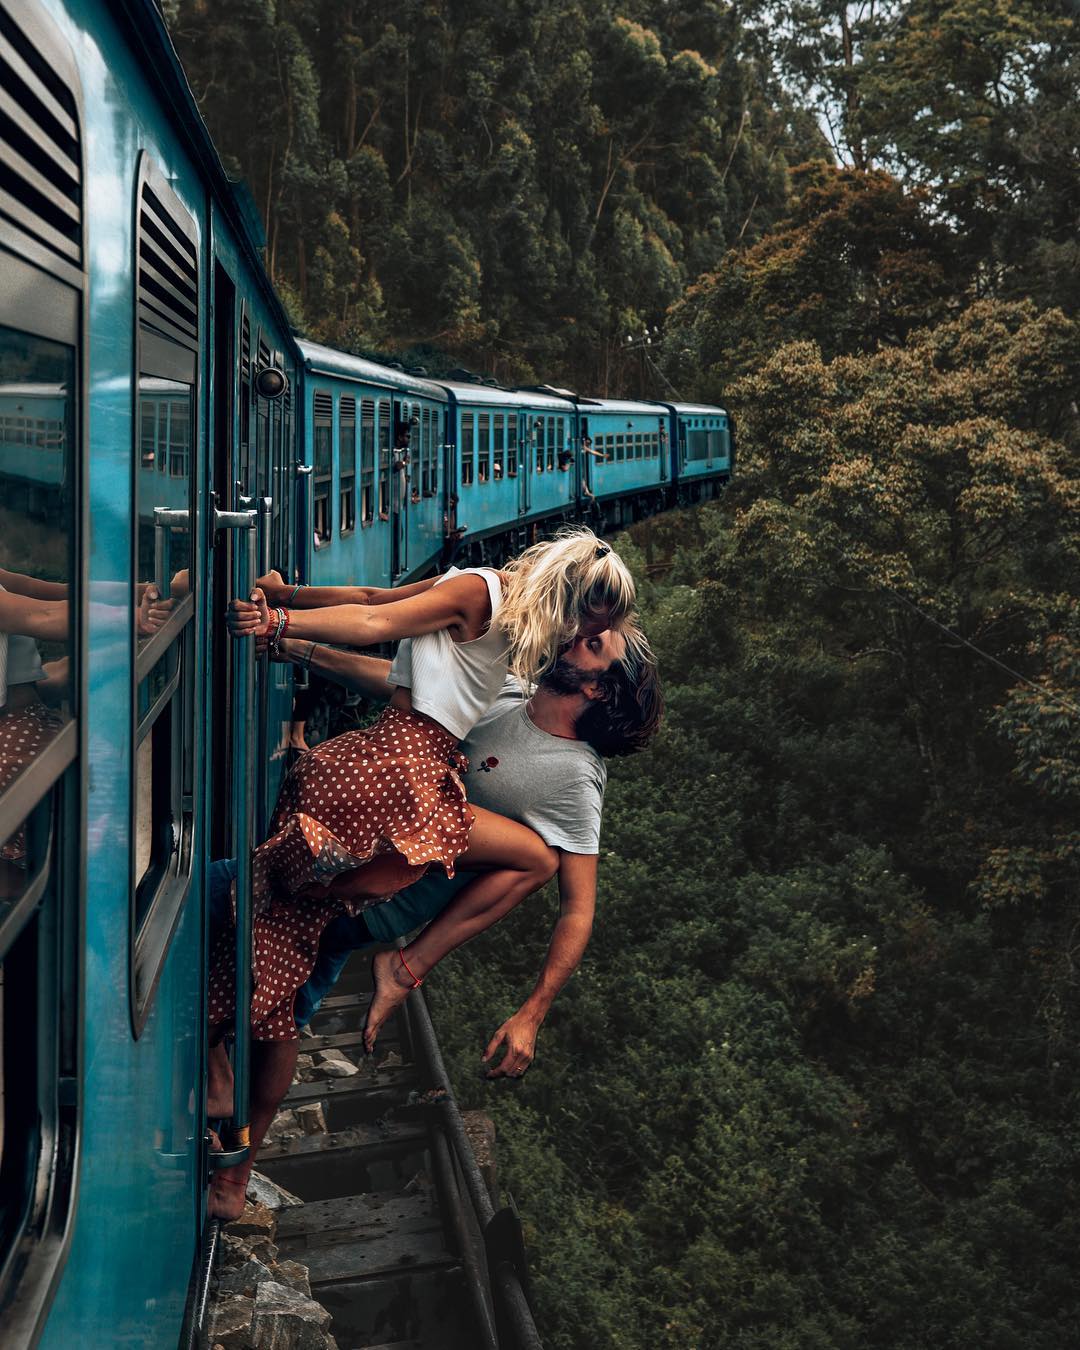 Пару тревел-блогеров раскритиковали за опасное фото на поезде